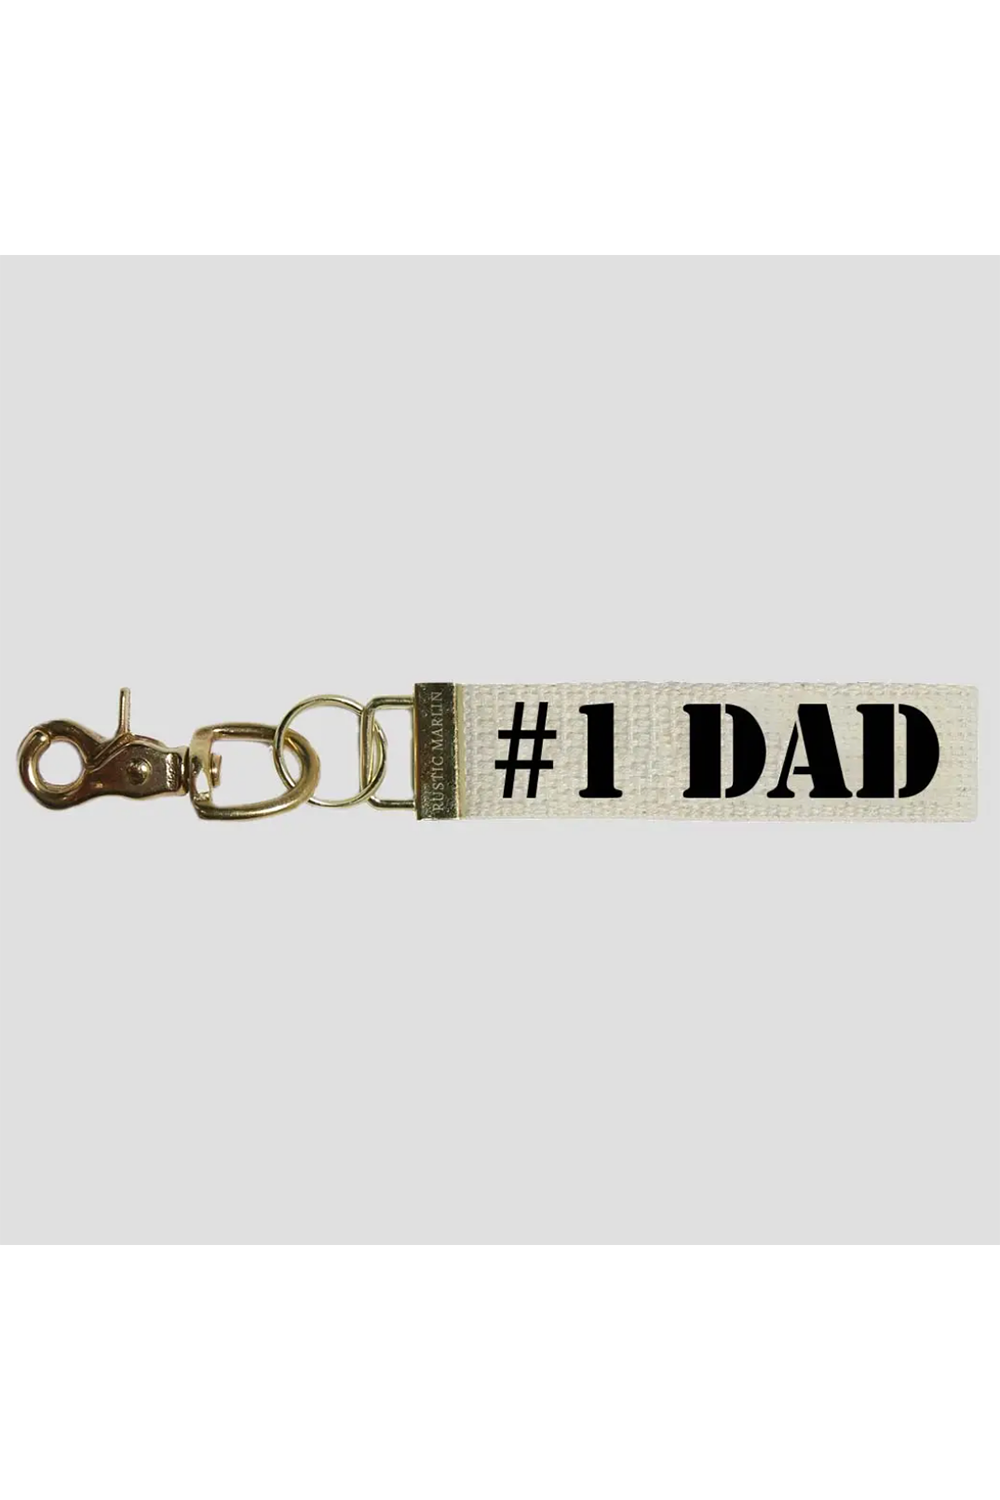 Rustic Keychain - #1 Dad